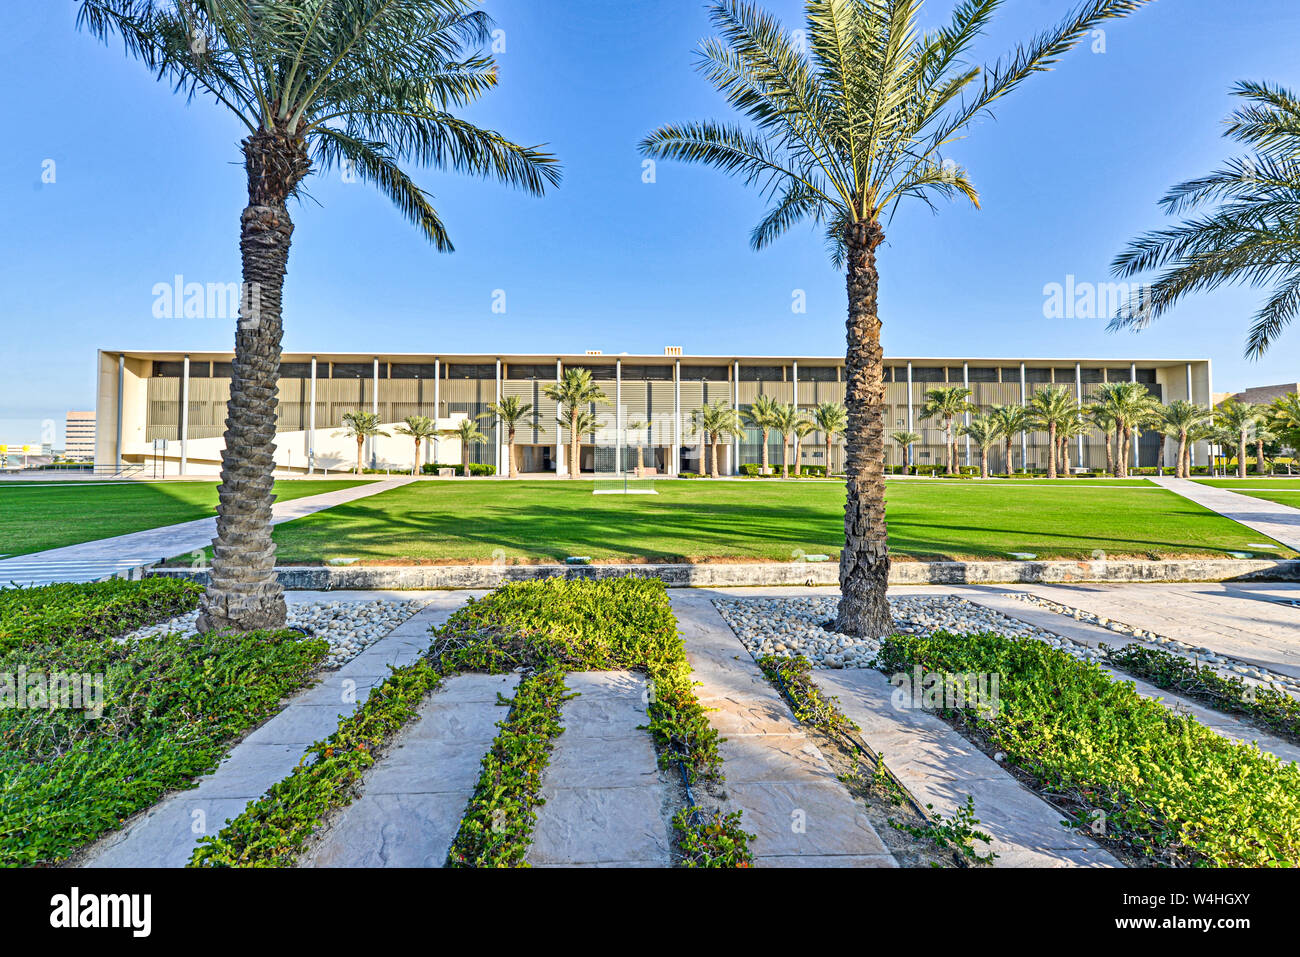 DOHA, Katar - 1. JANUAR 2016: Zeitgenössische Architektur und formale Rasen an der Education City, Doha während eines Winter am späten Nachmittag Stockfoto